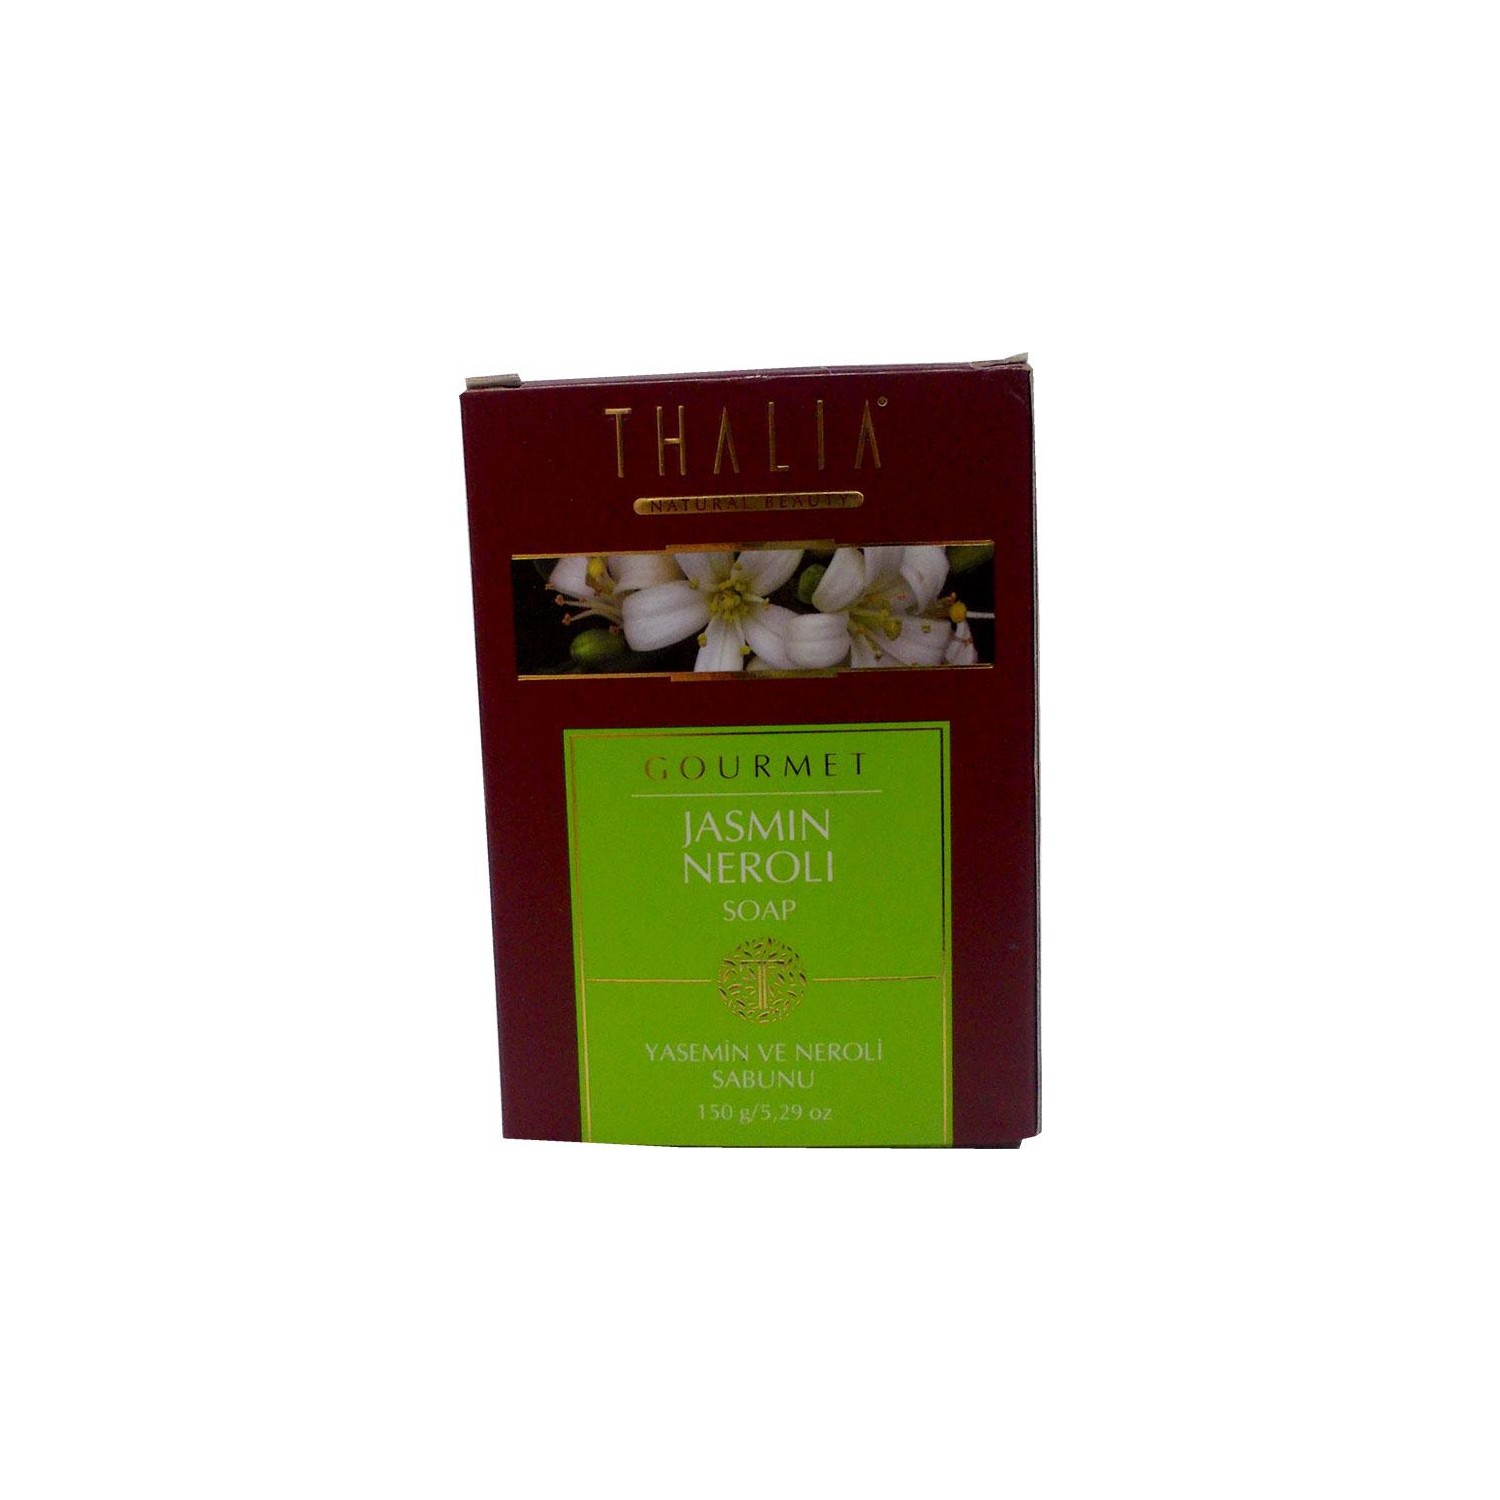 Натуральное твердое мыло Thalia с экстрактом нероли и жасмина увлажняющее натуральное мыло thalia с зернами оливы